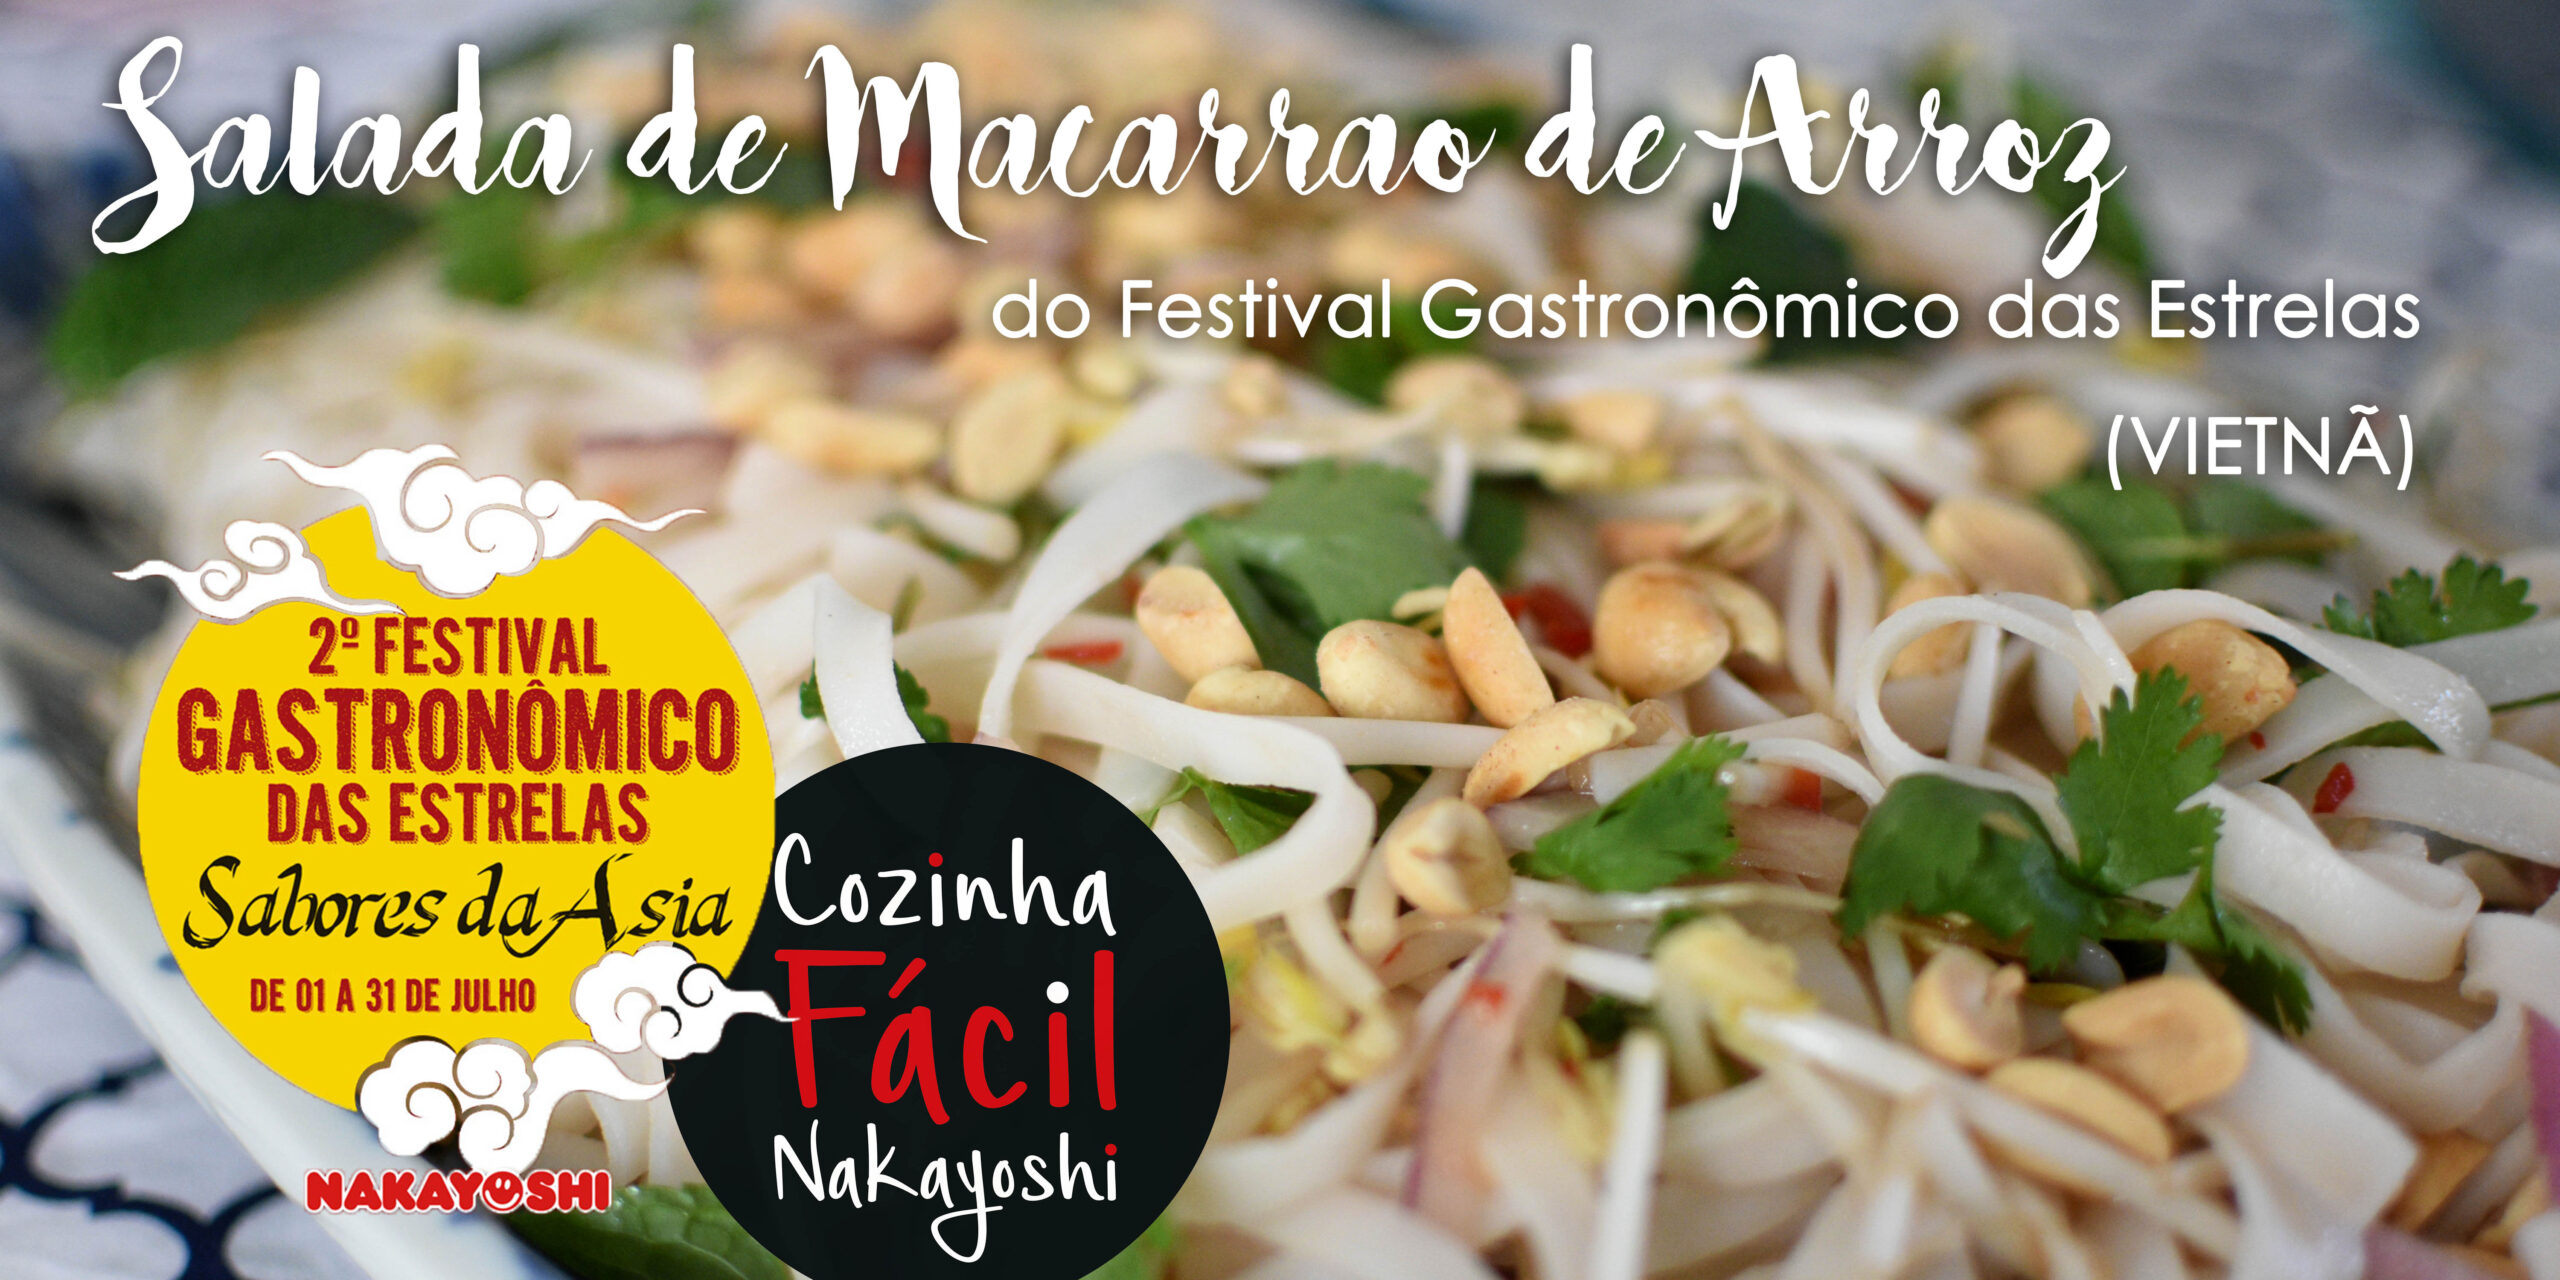 Salada de Macarrão de Arroz (VIETNÃ) | Cozinha Fácil Nakayoshi #31